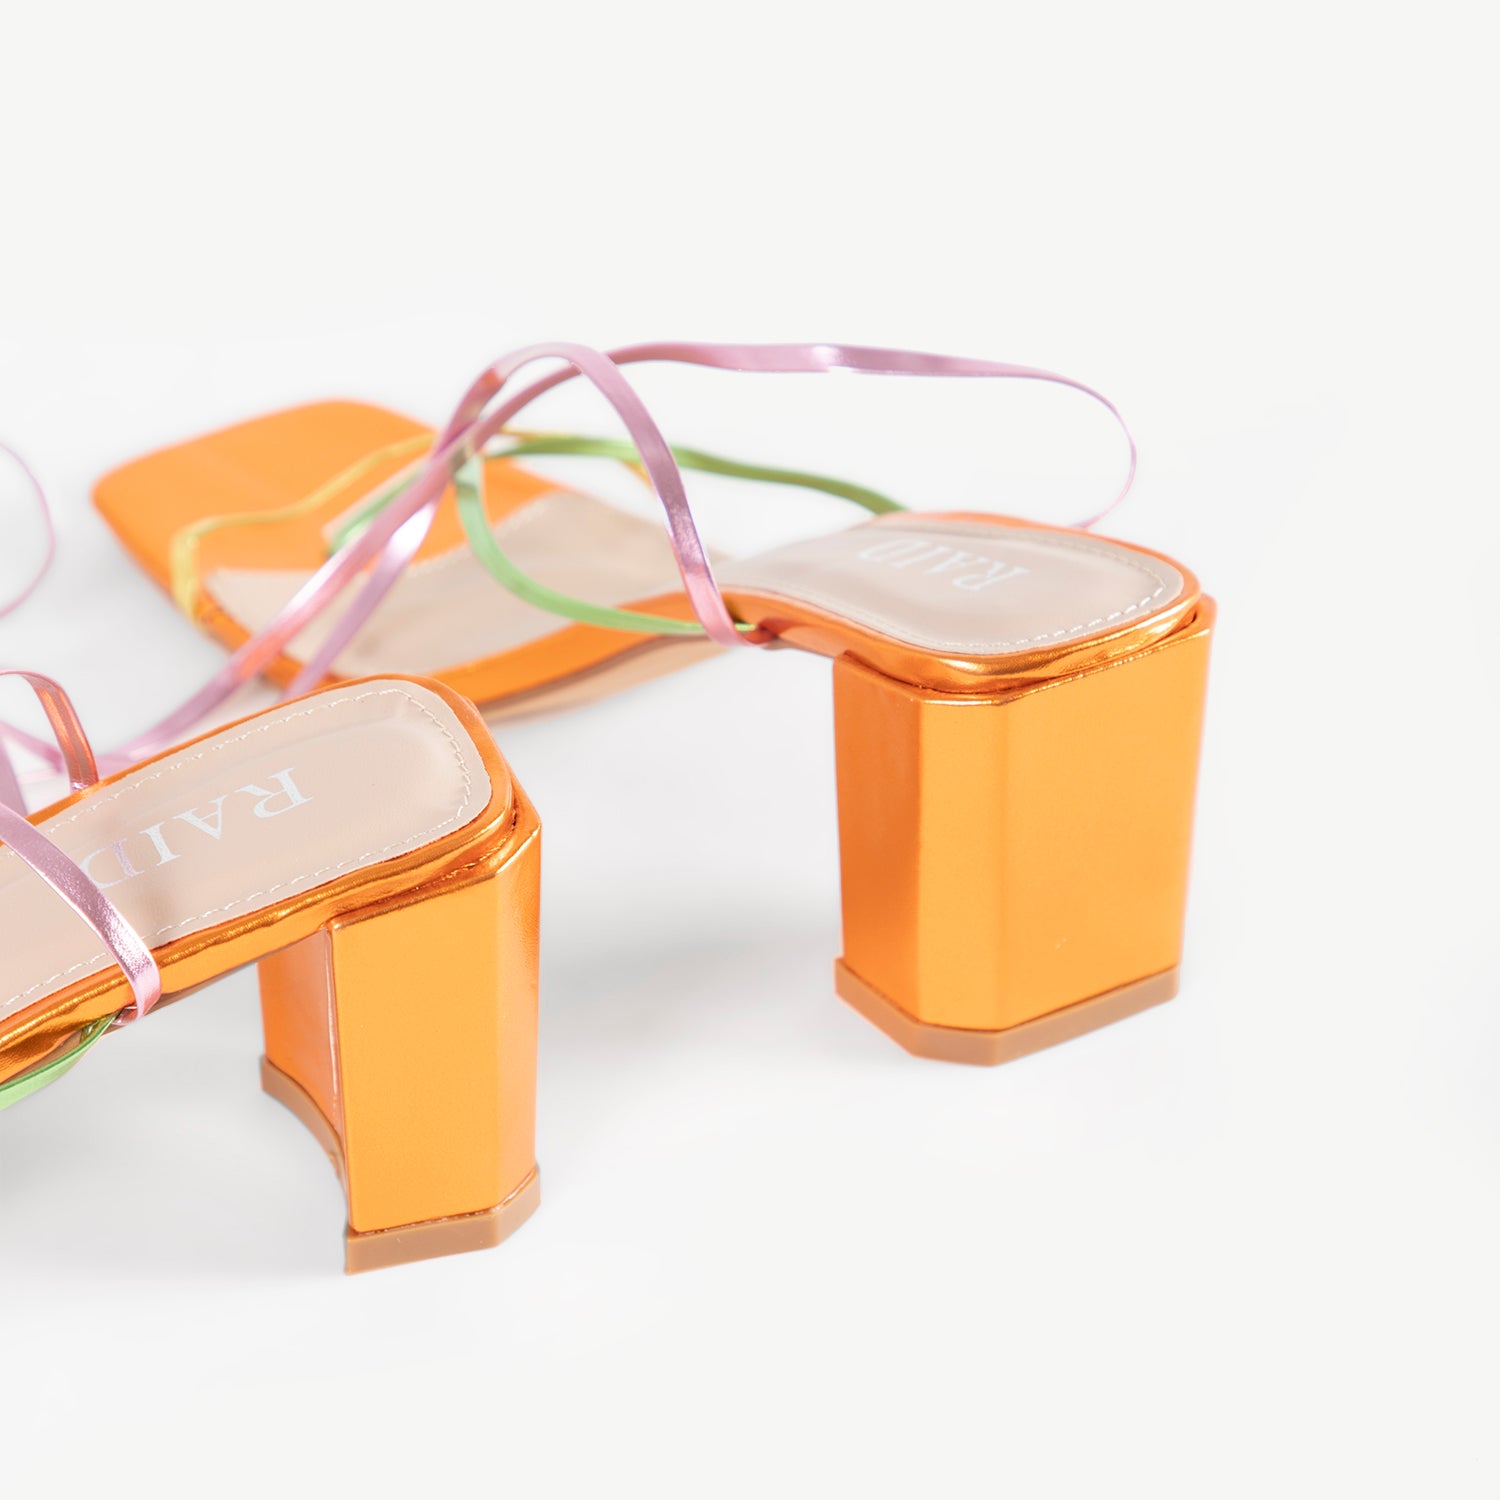 RAID Annelise Mid Block Heel Sandal In Orange Multi